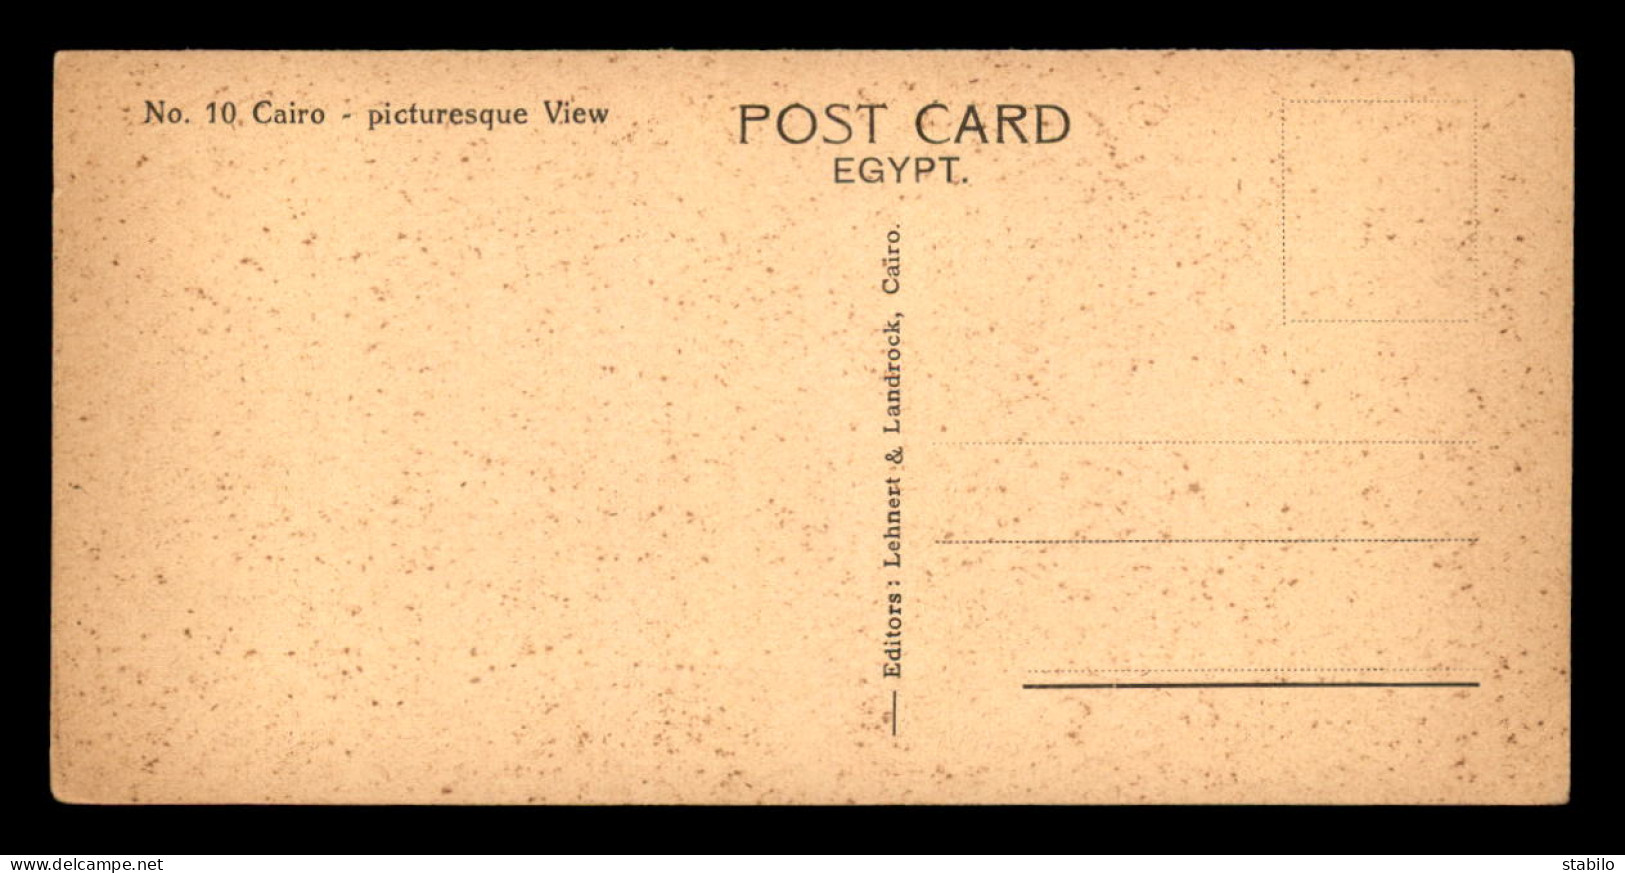 EGYPTE - LENHERT & LANDROCK N°10 - CAIRO - PITURESQUE VIEW - FORMAT 15 X 7.5 CM - Cairo